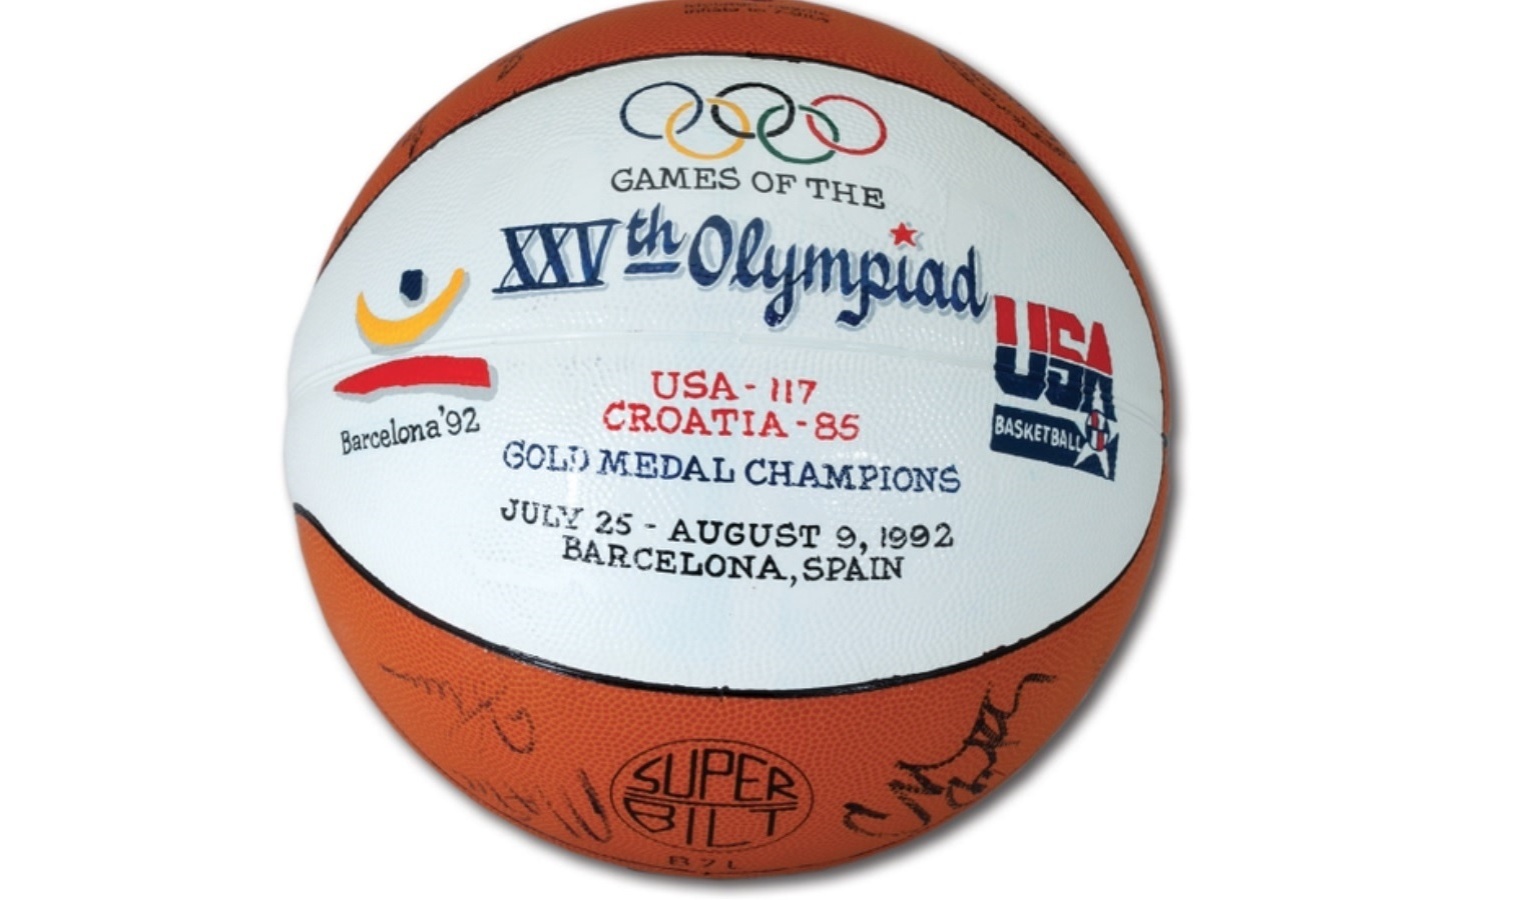 Bola autografada pelo Dream Team do basquete de 1992, que pertencia ao técnico Chuck Daly, leiloada nos EUA em 2015